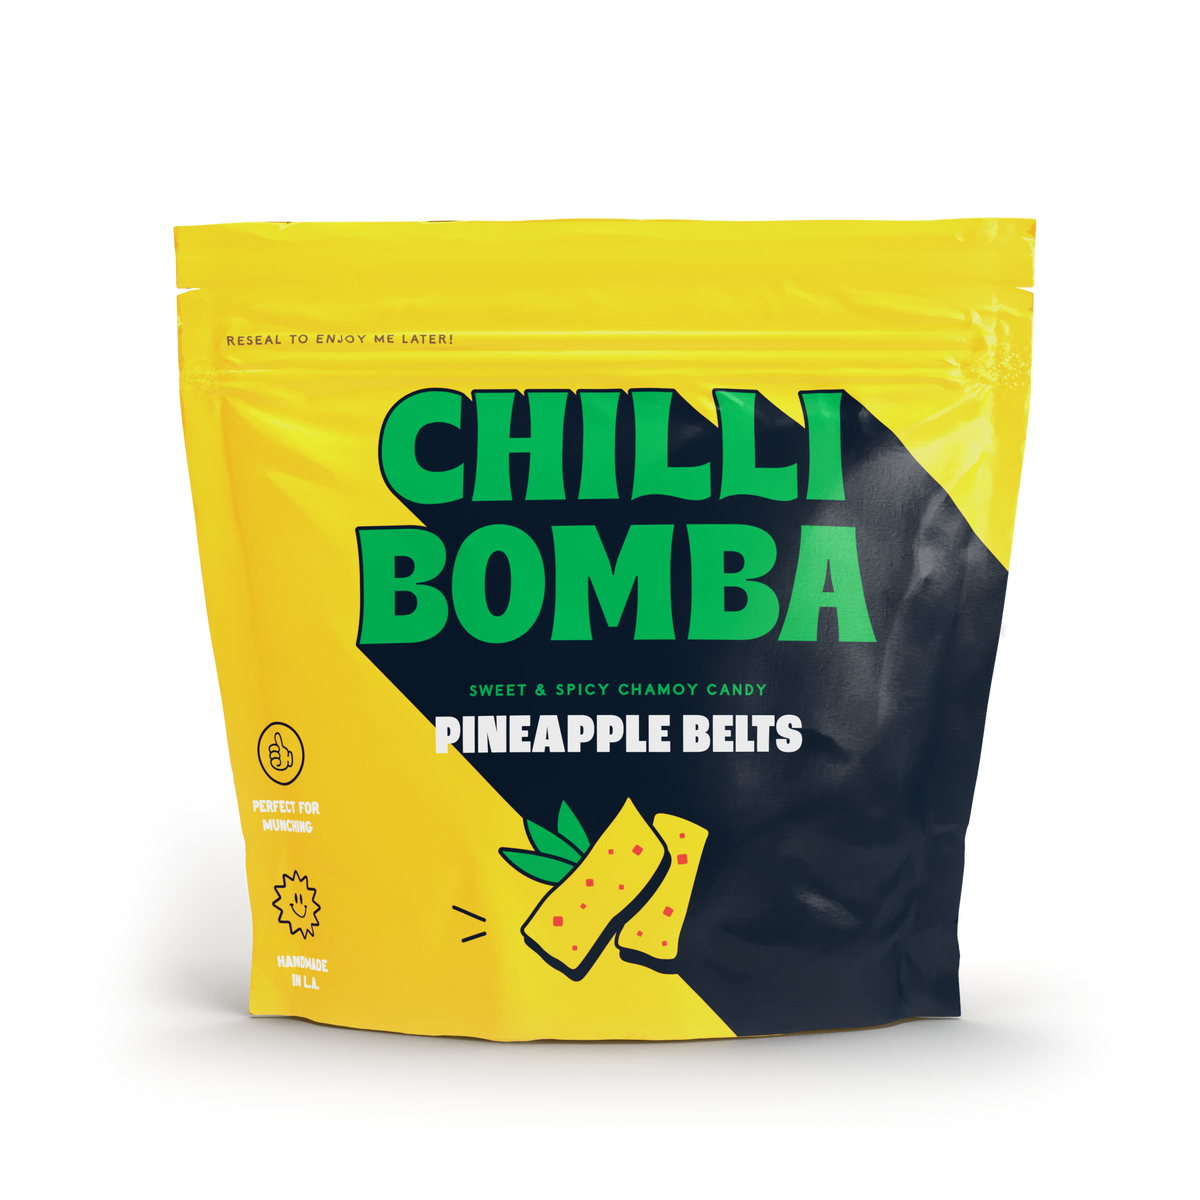 Chilli Bomba Pineapple Belts Chamoy Candy - 8oz